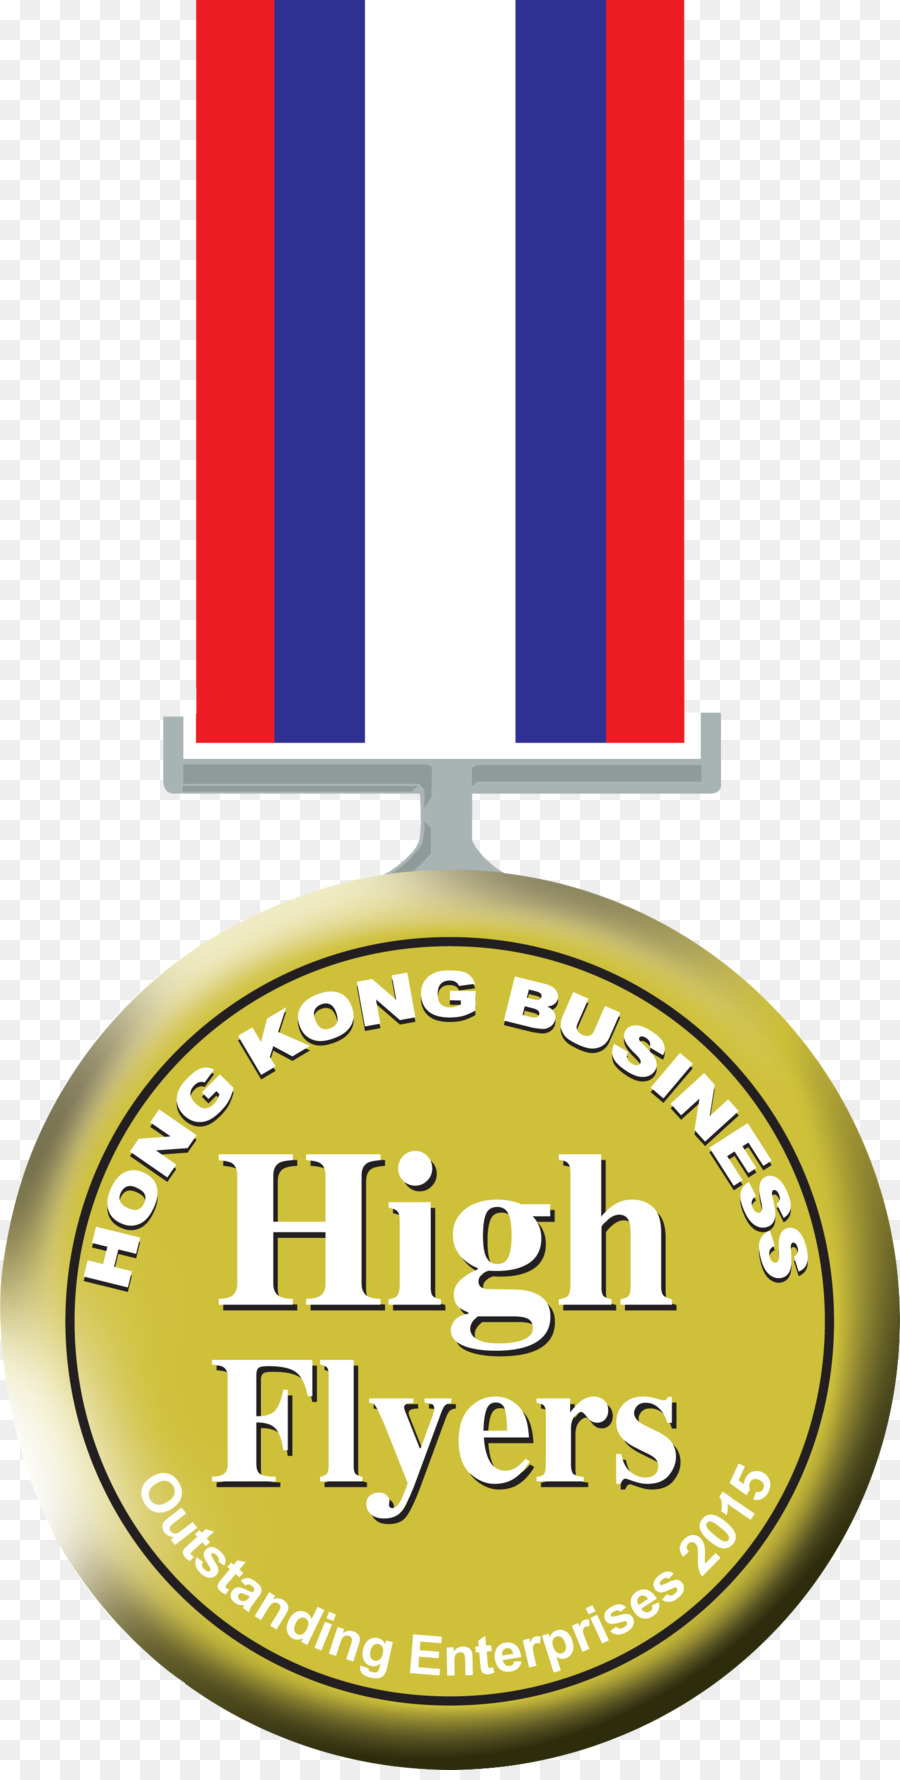 Cosmo Hotel Hong Kong Business Marketing Award Logo - geschäft